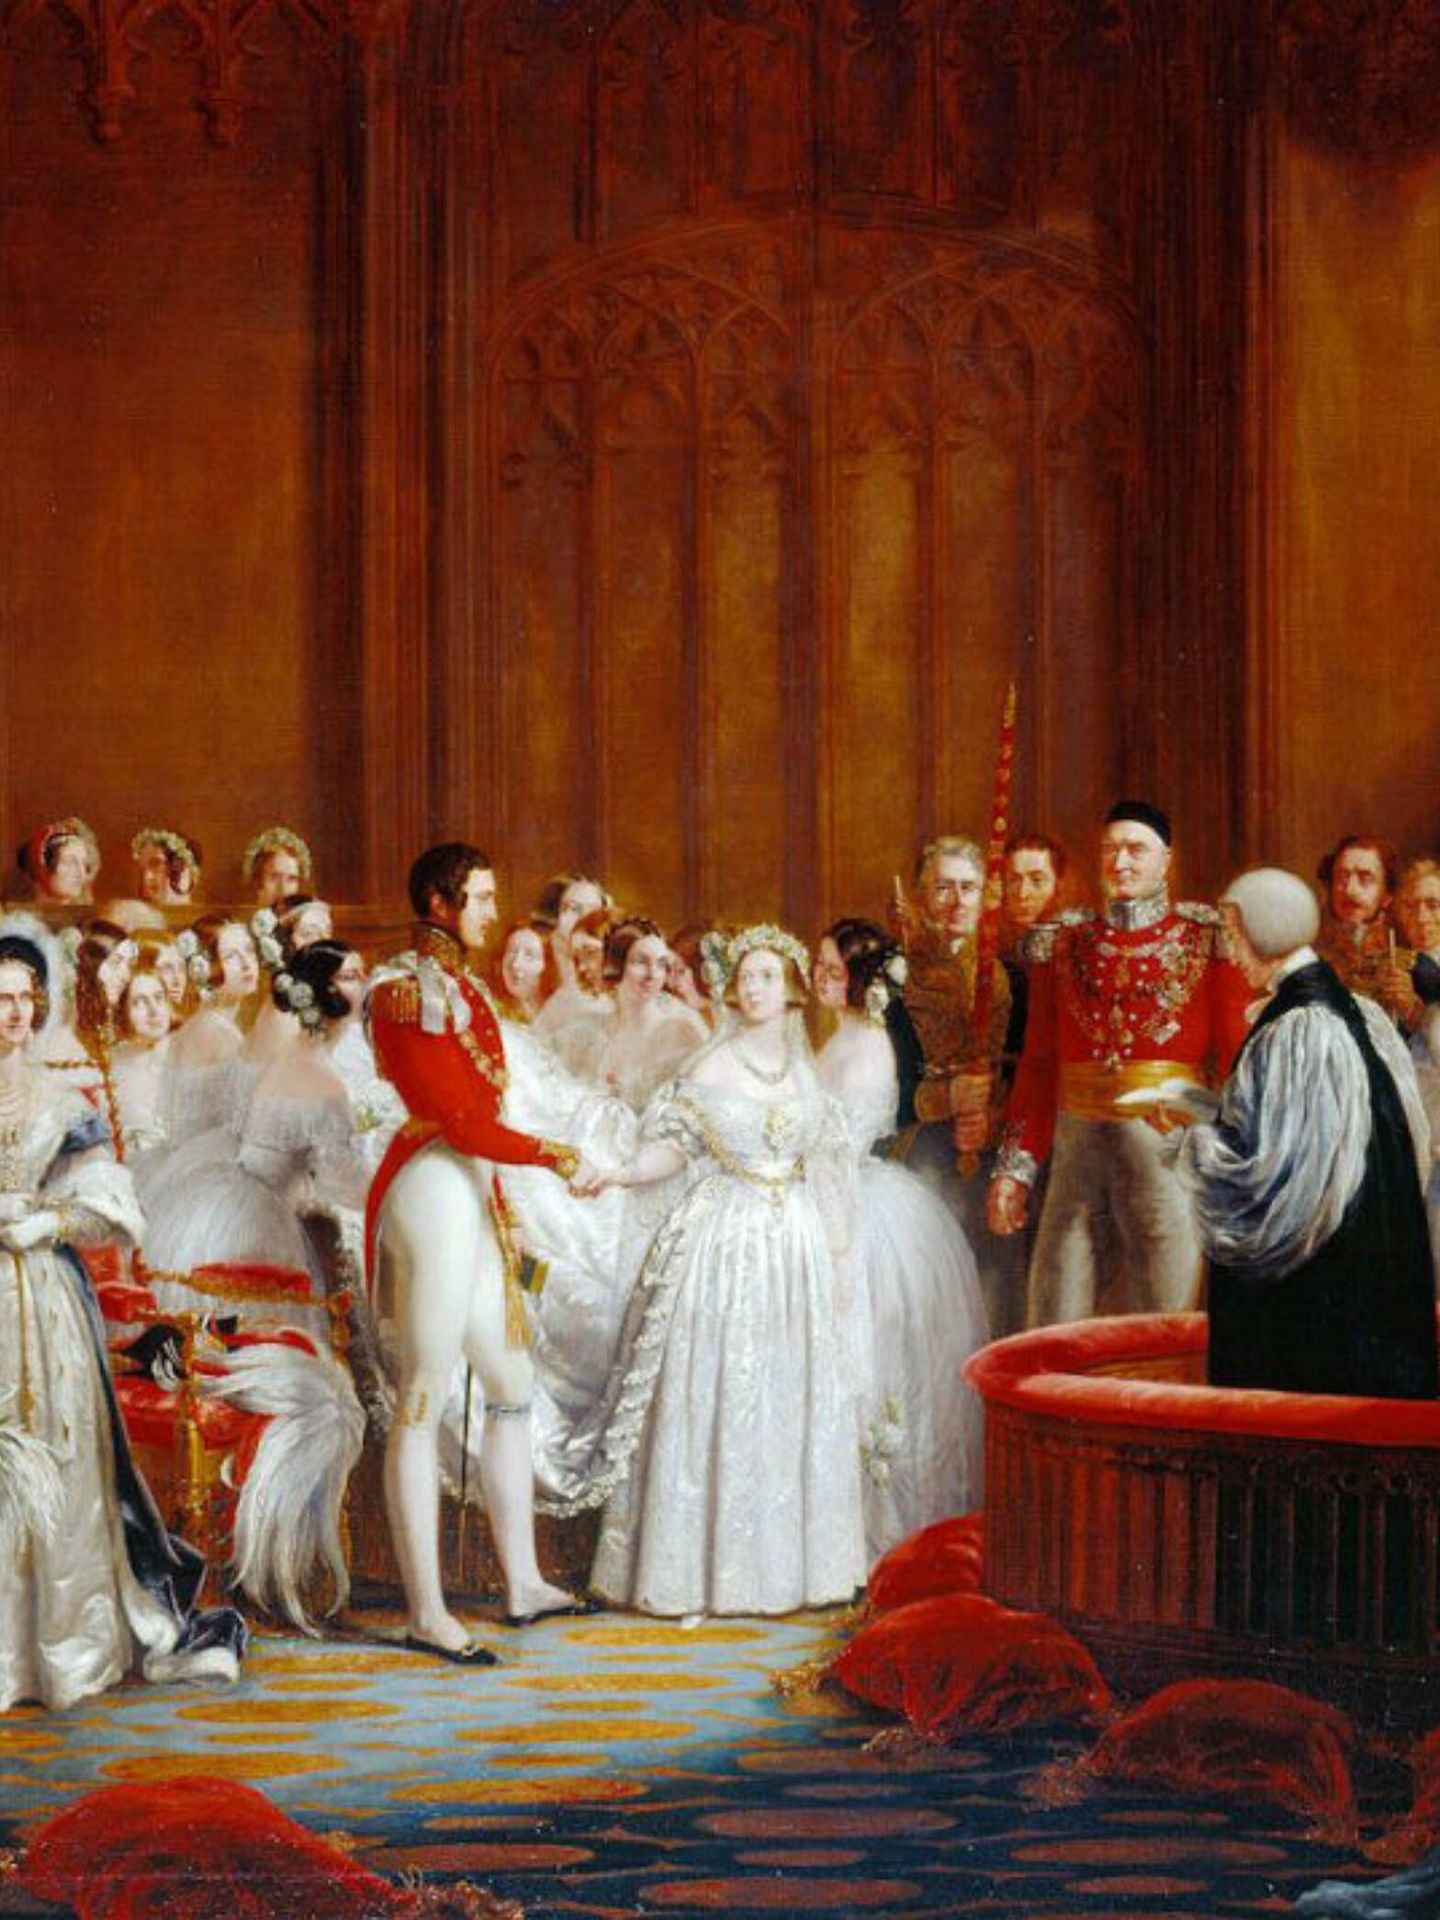 Ilustración de la boda de Victoria y Alberto en 1840. (Royal Collection Trust/Cortesía)